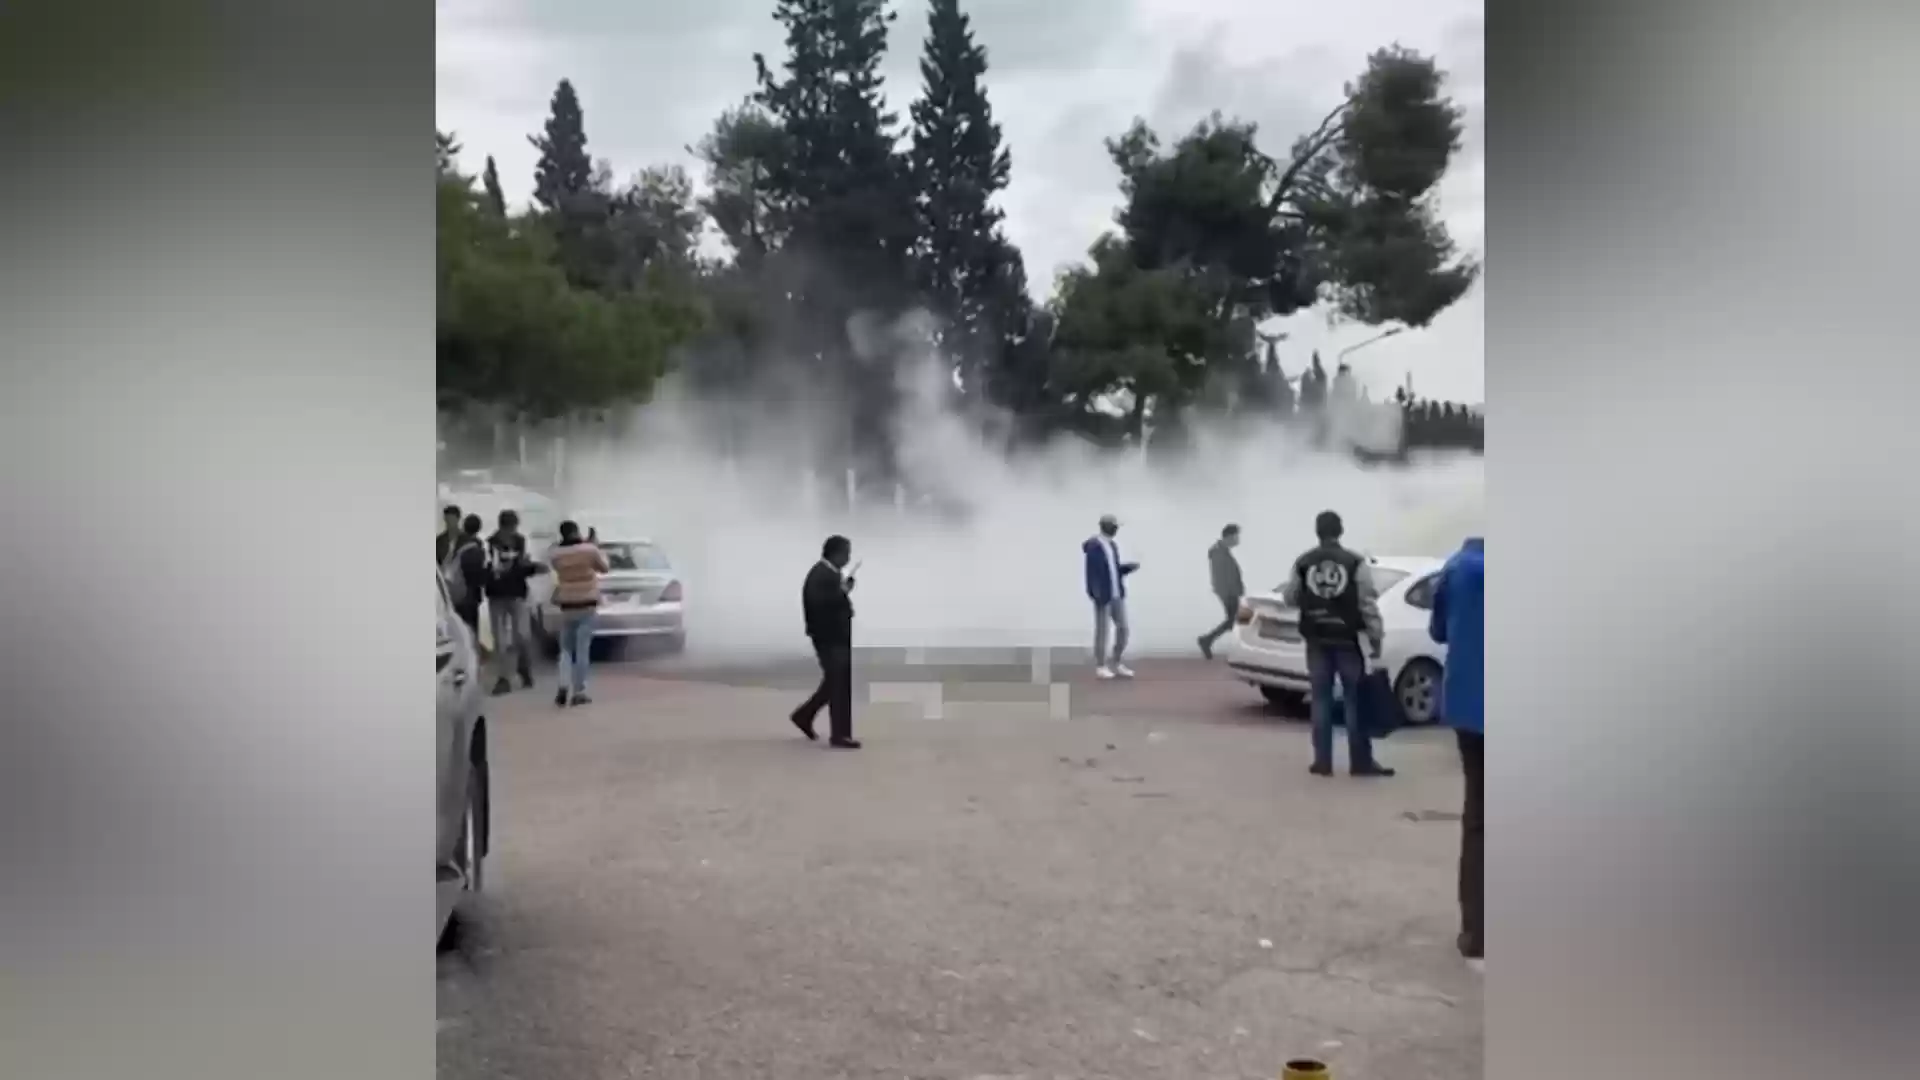 استخدام طفايات حريق لتفريق مشاجرة كبيرة بالجامعة الأردنية (فيديو)